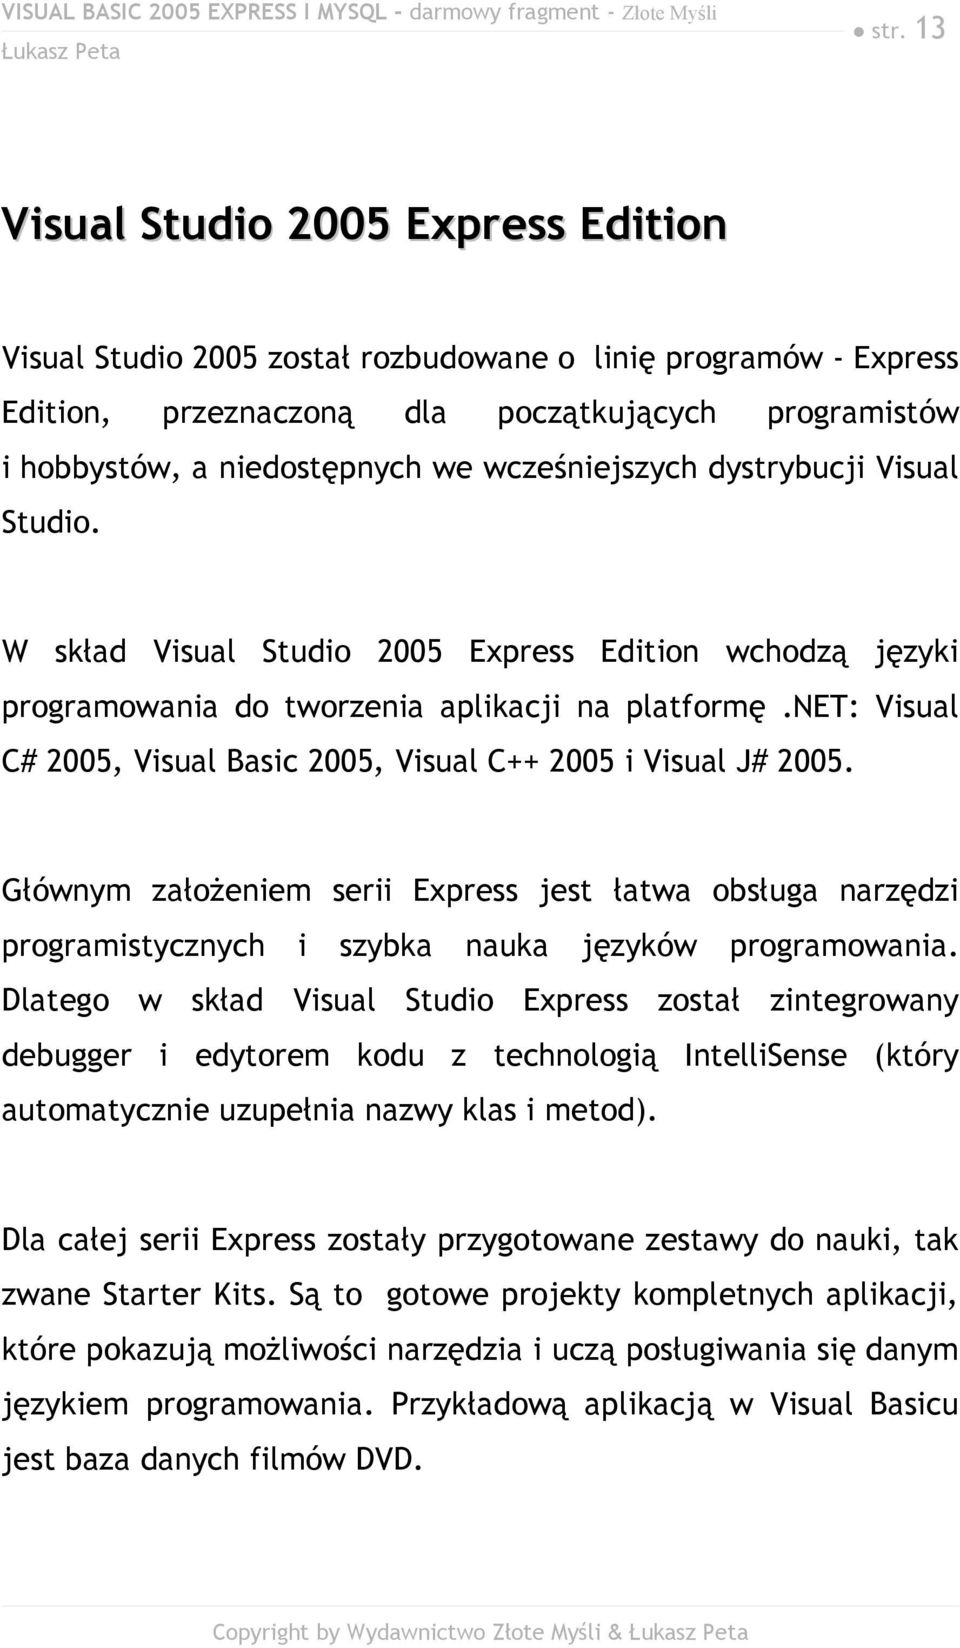 net: Visual C# 2005, Visual Basic 2005, Visual C++ 2005 i Visual J# 2005. Głównym założeniem serii Express jest łatwa obsługa narzędzi programistycznych i szybka nauka języków programowania.